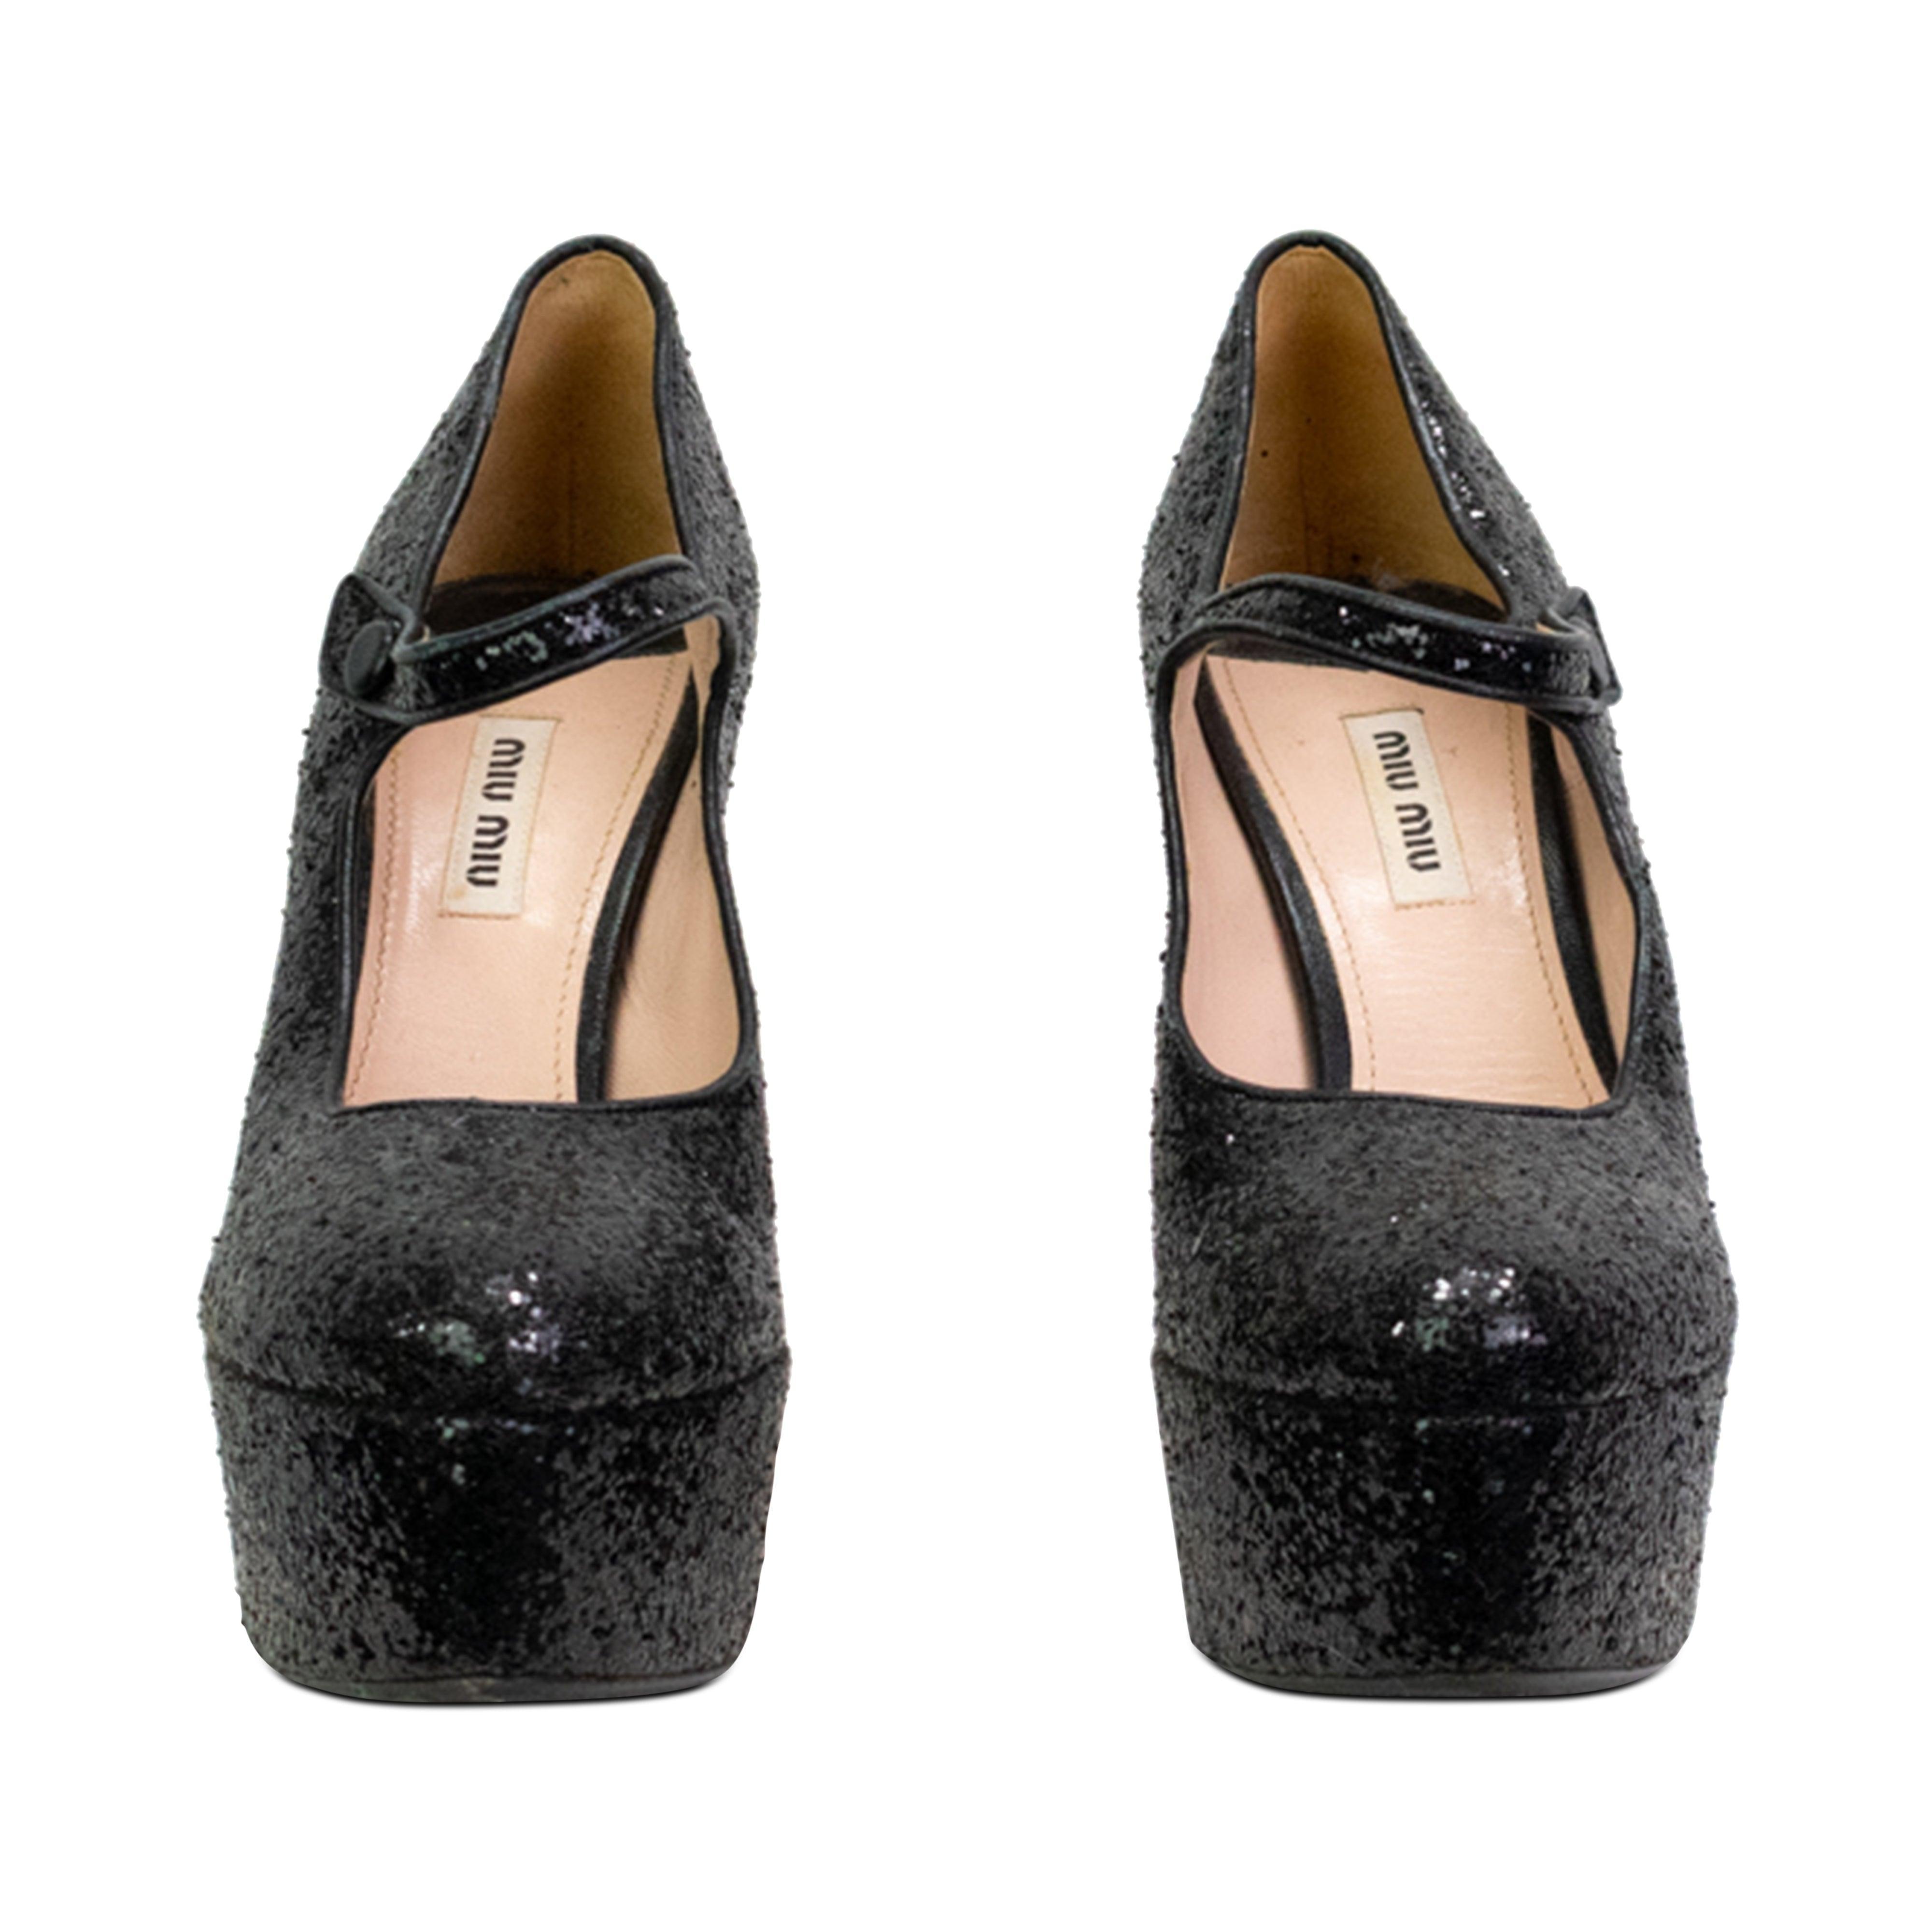 Miu Miu Heels - 38.5 - Fashionably Yours